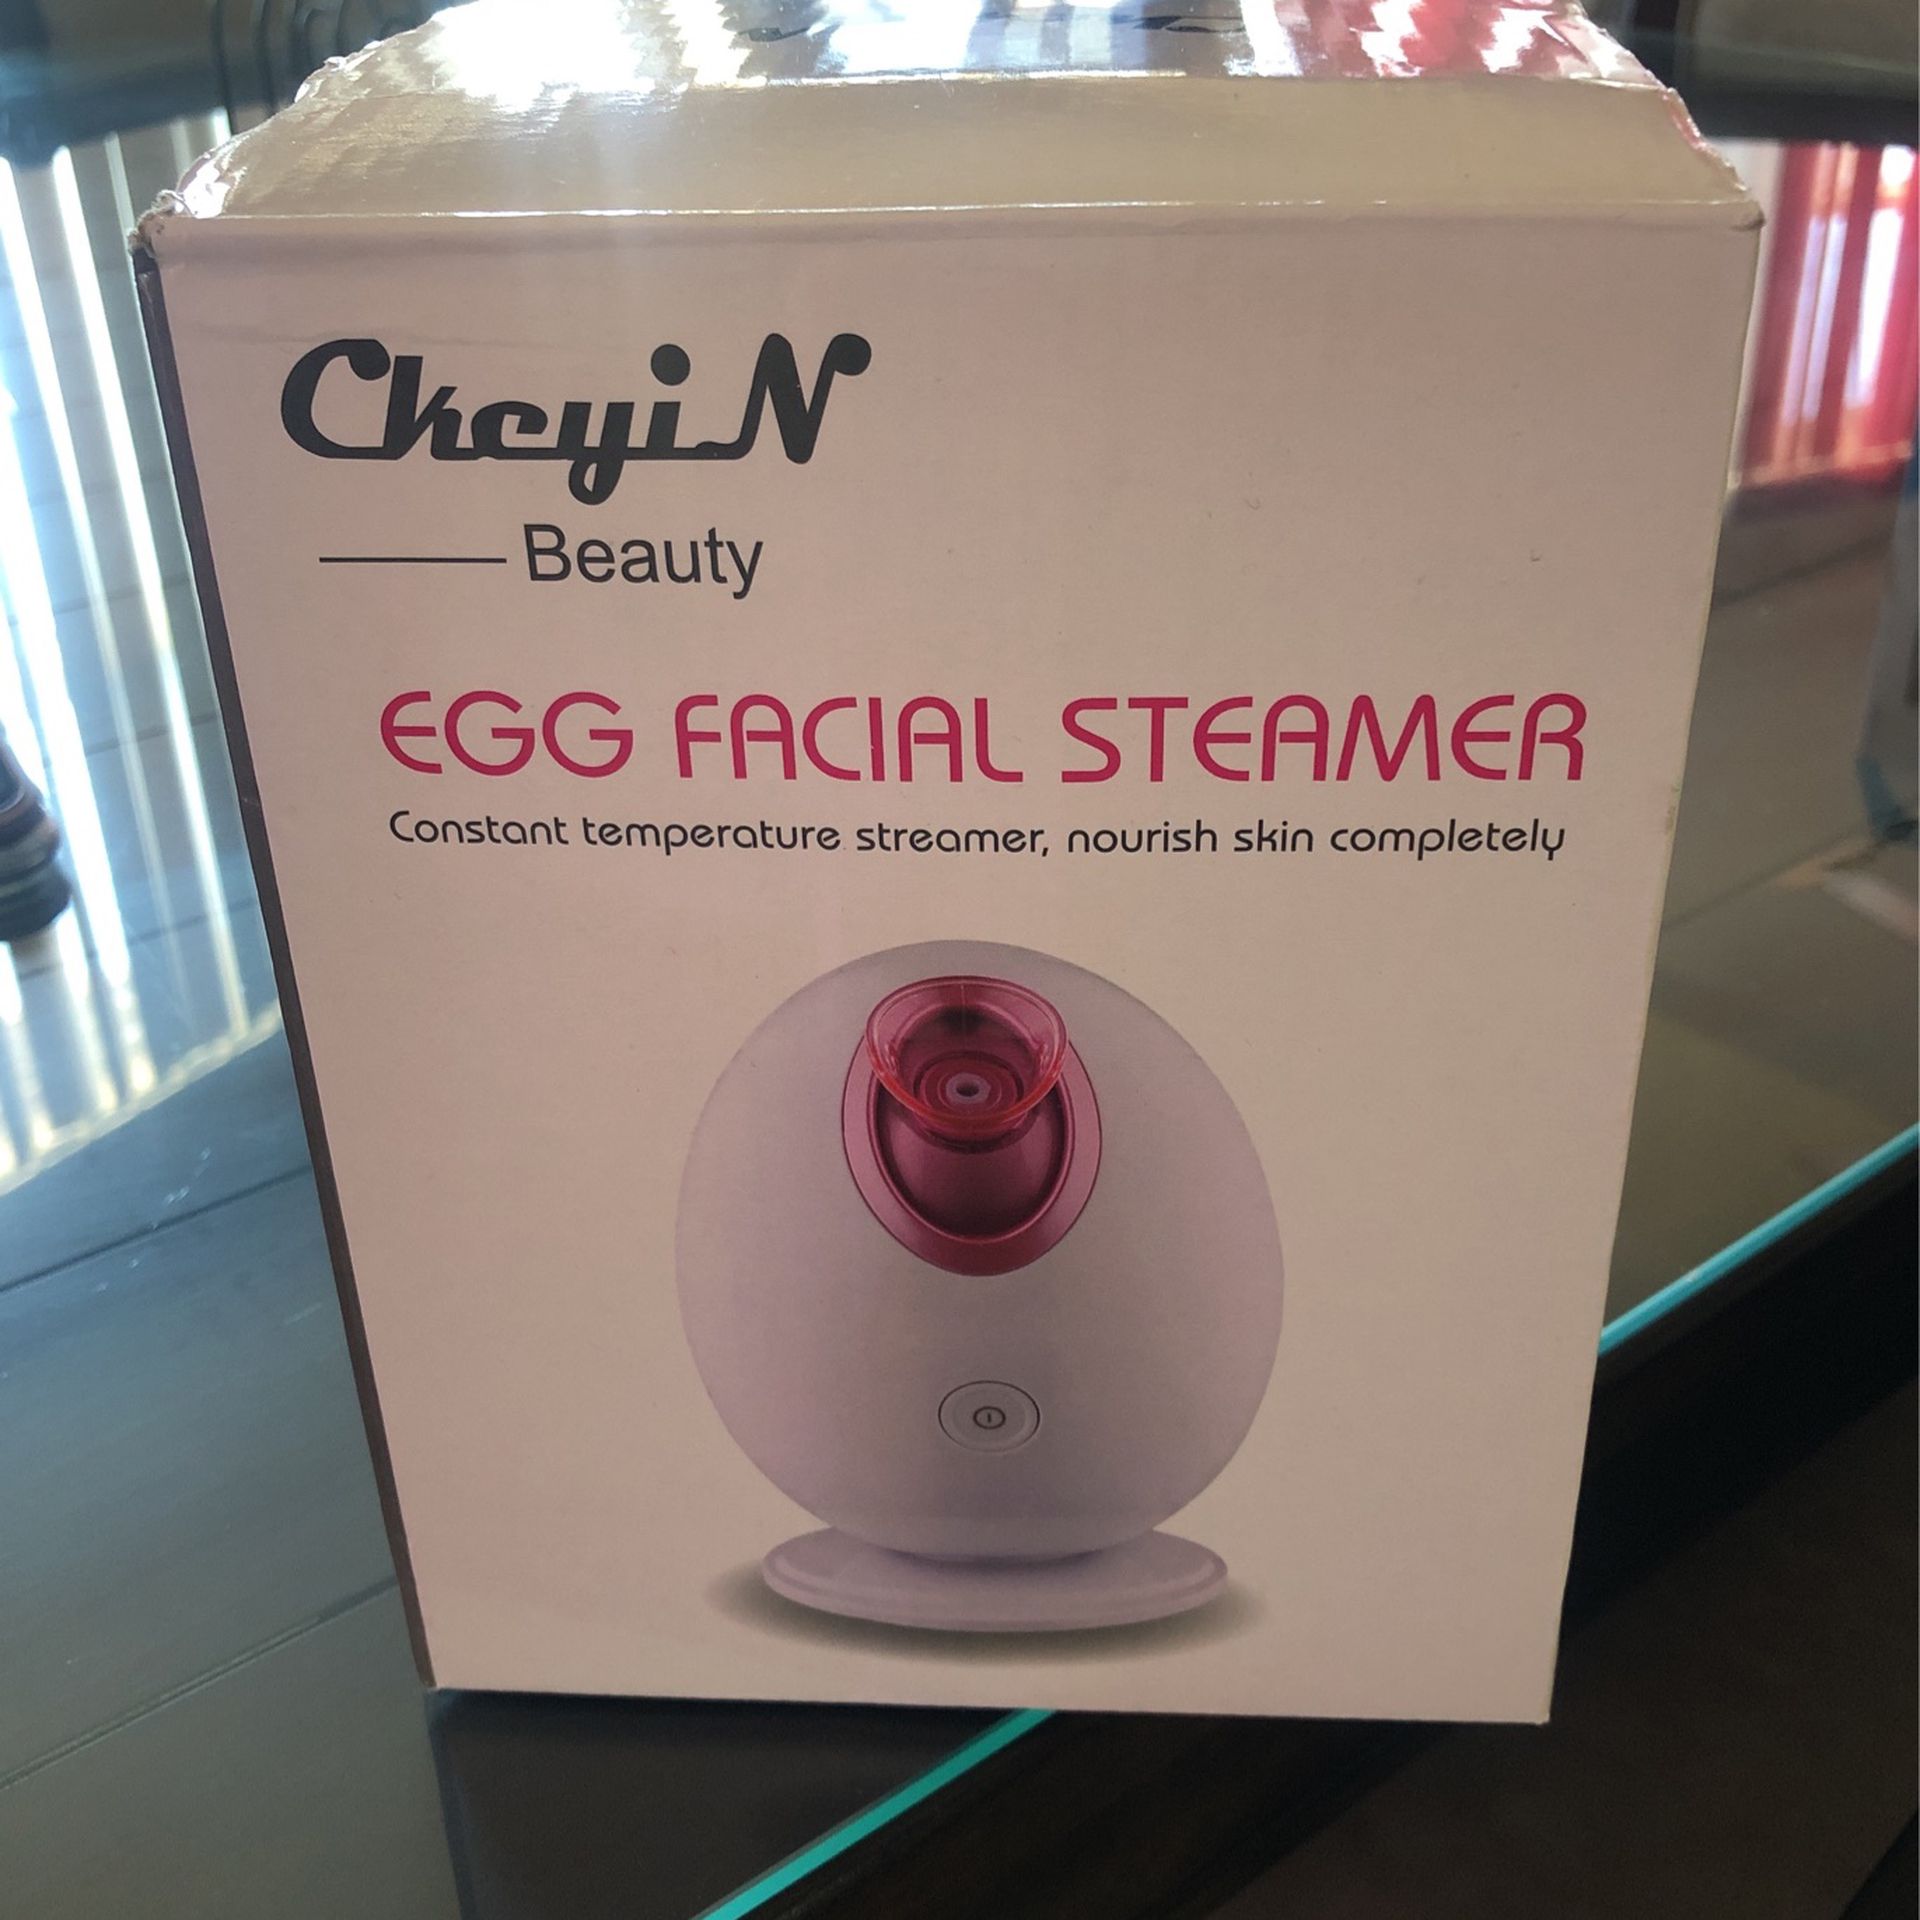 Egg Facial Steamer